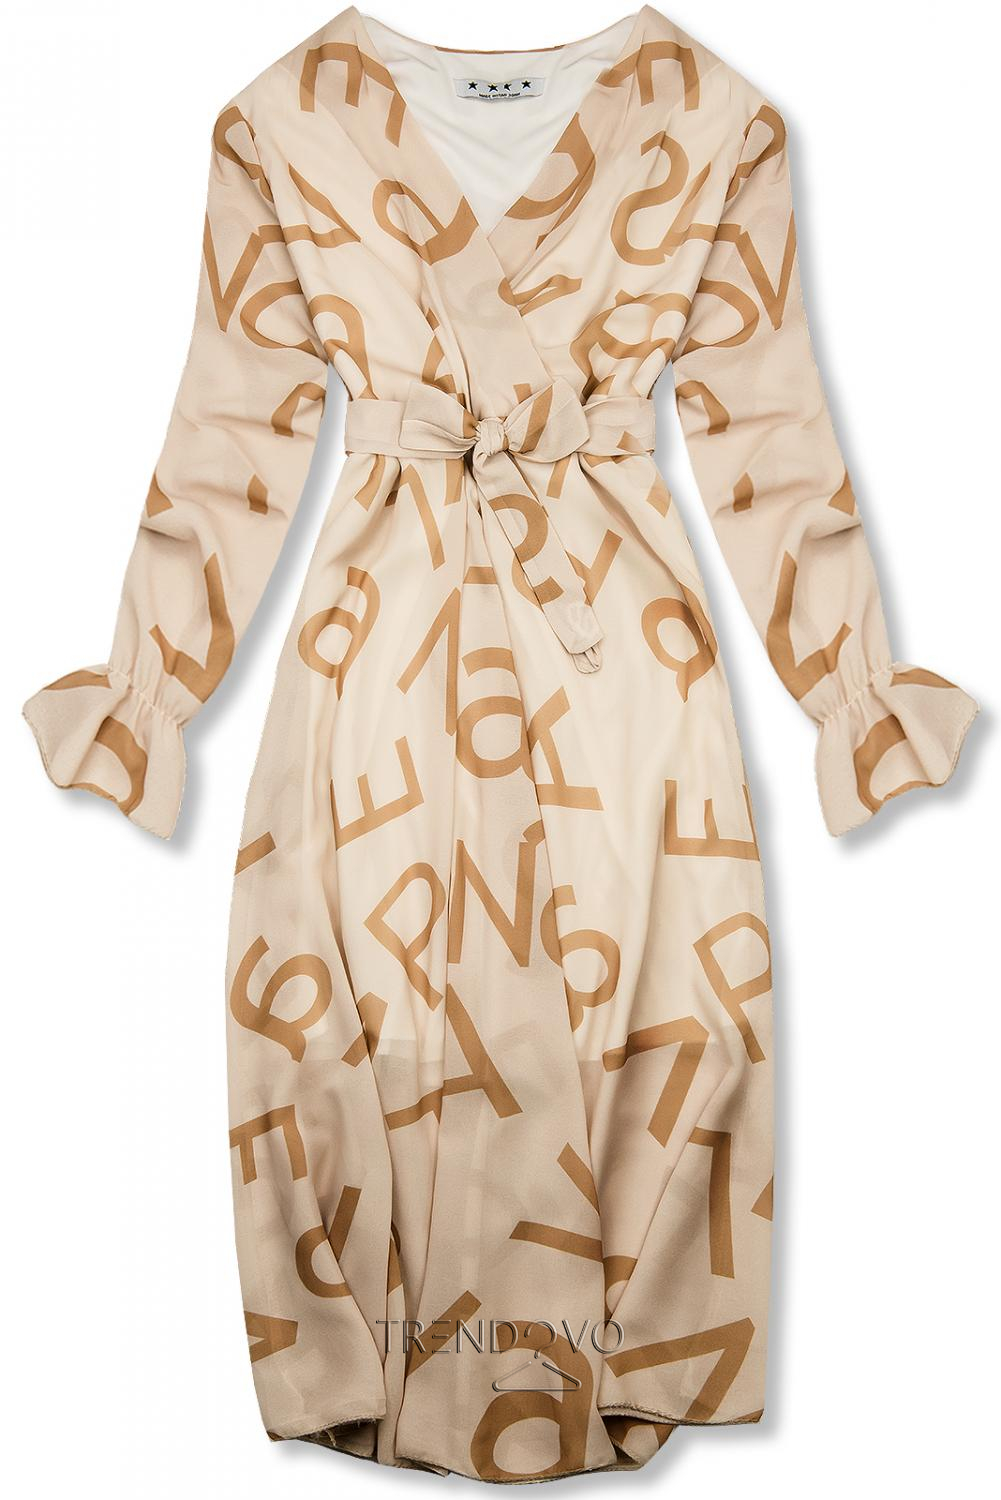 Béžové midi šaty s potlačou písmen